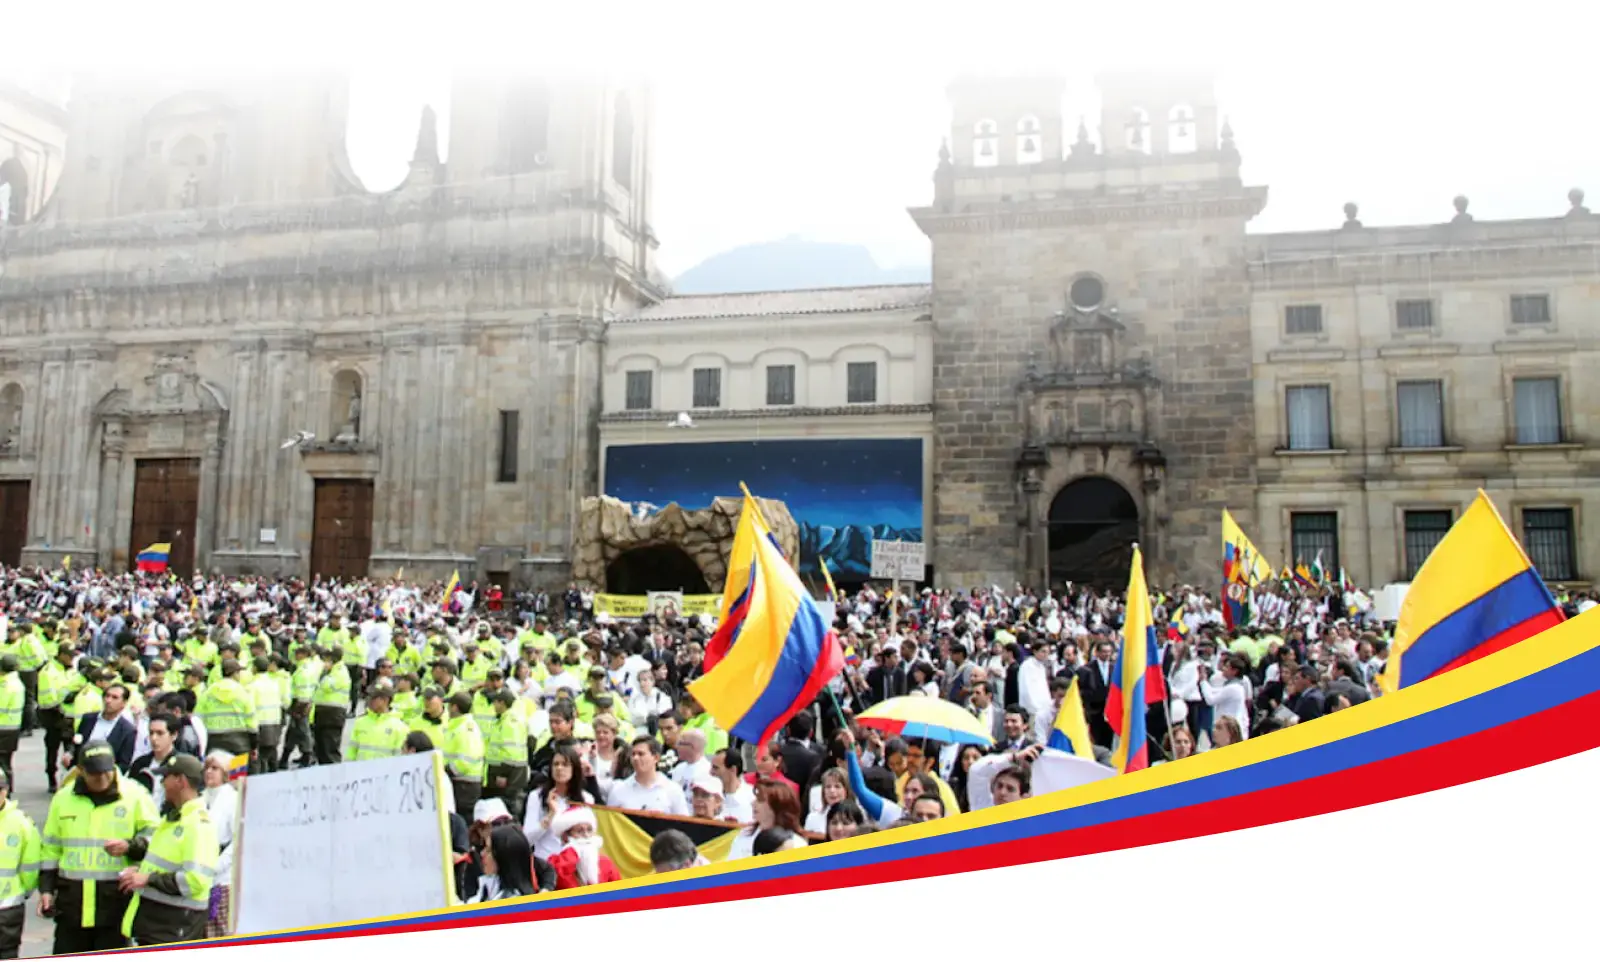 Большое скопление людей в Колумбии, многие из которых держат колумбийский флаг, перед видным федеральным зданием, возможно, собором или правительственным сооружением, с сотрудниками правоохранительных органов на переднем плане.